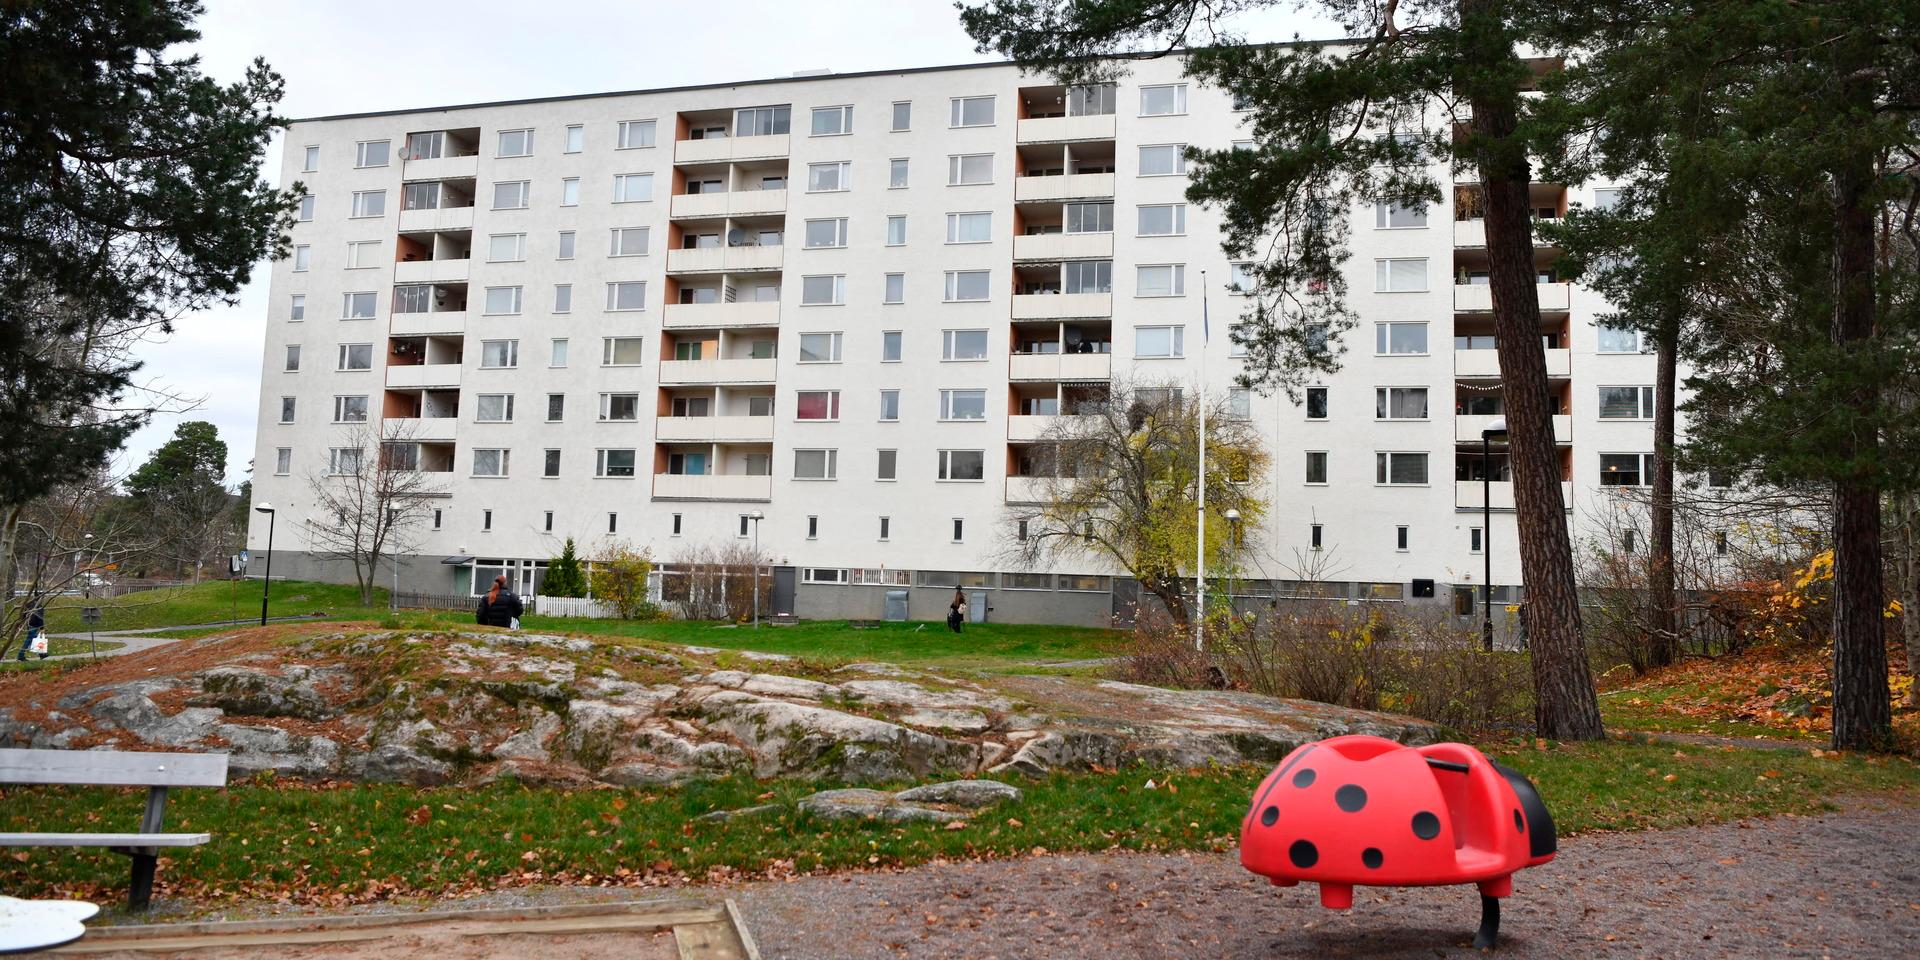 Det var i november som barnen knivhöggs och kastades ut från ett fönster på femte våningen i Hässelby i Stockholm. 